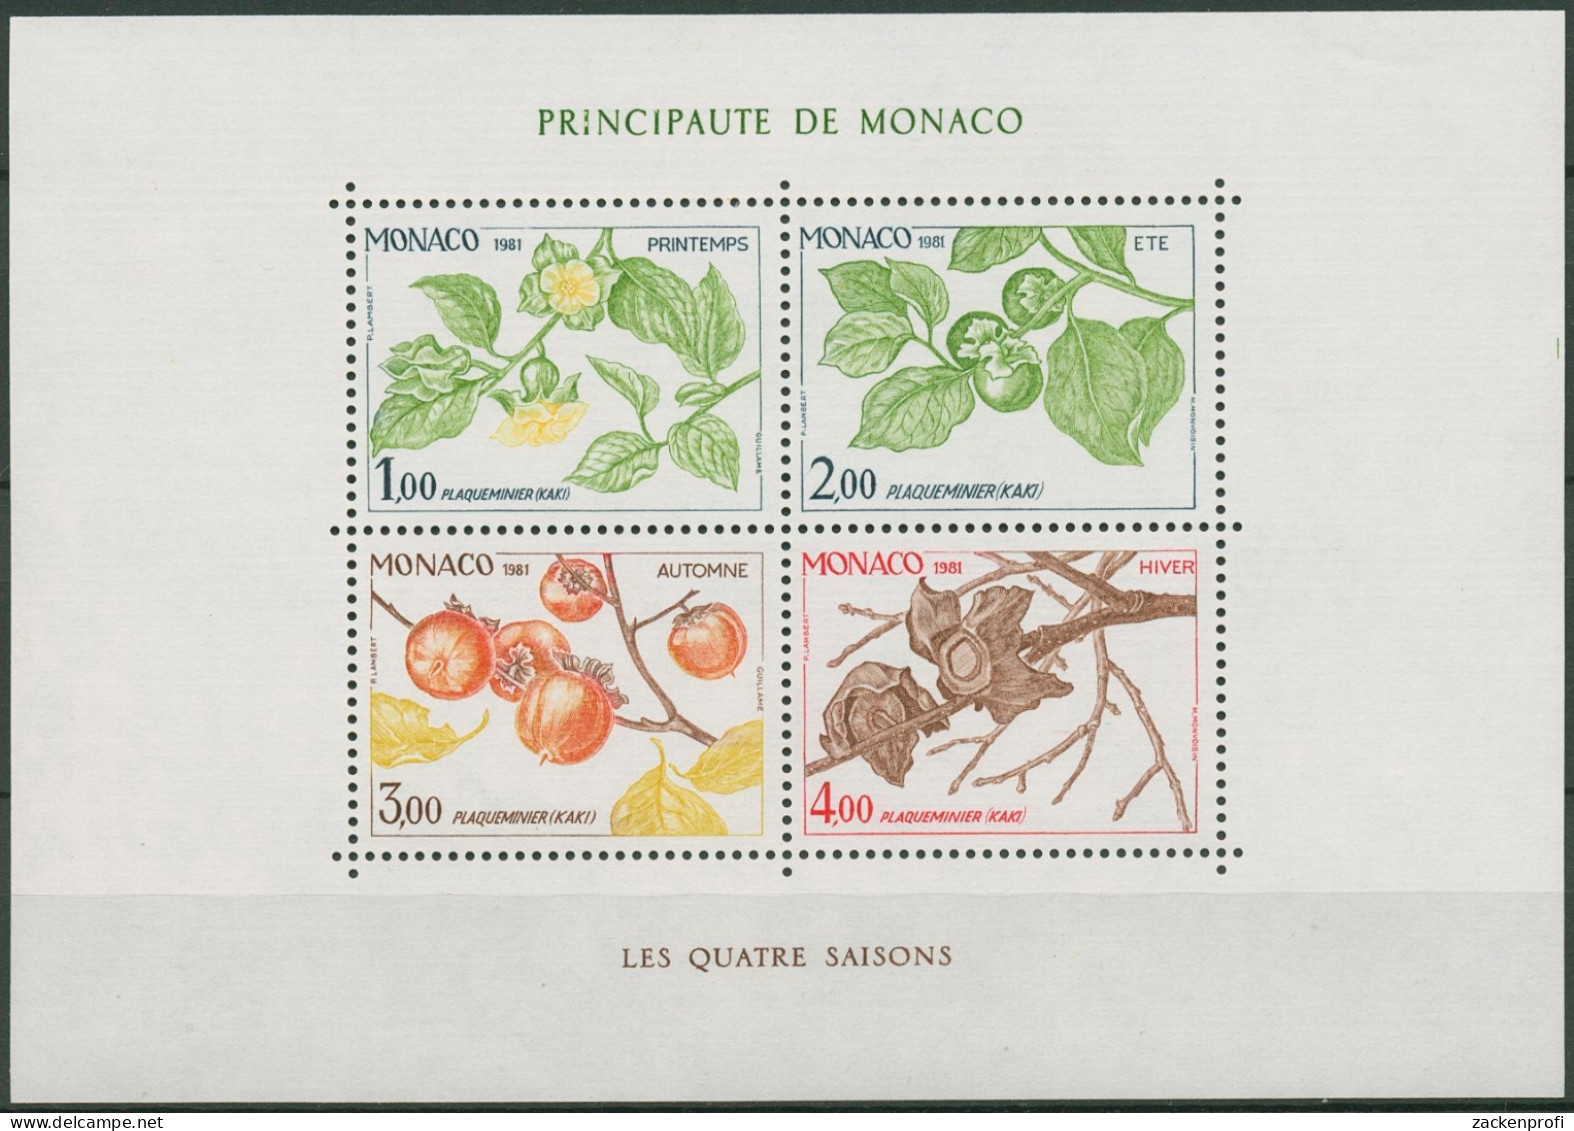 Monaco 1981 Vier Jahreszeiten Kakipflaume Block 18 Postfrisch (C91401) - Bloques